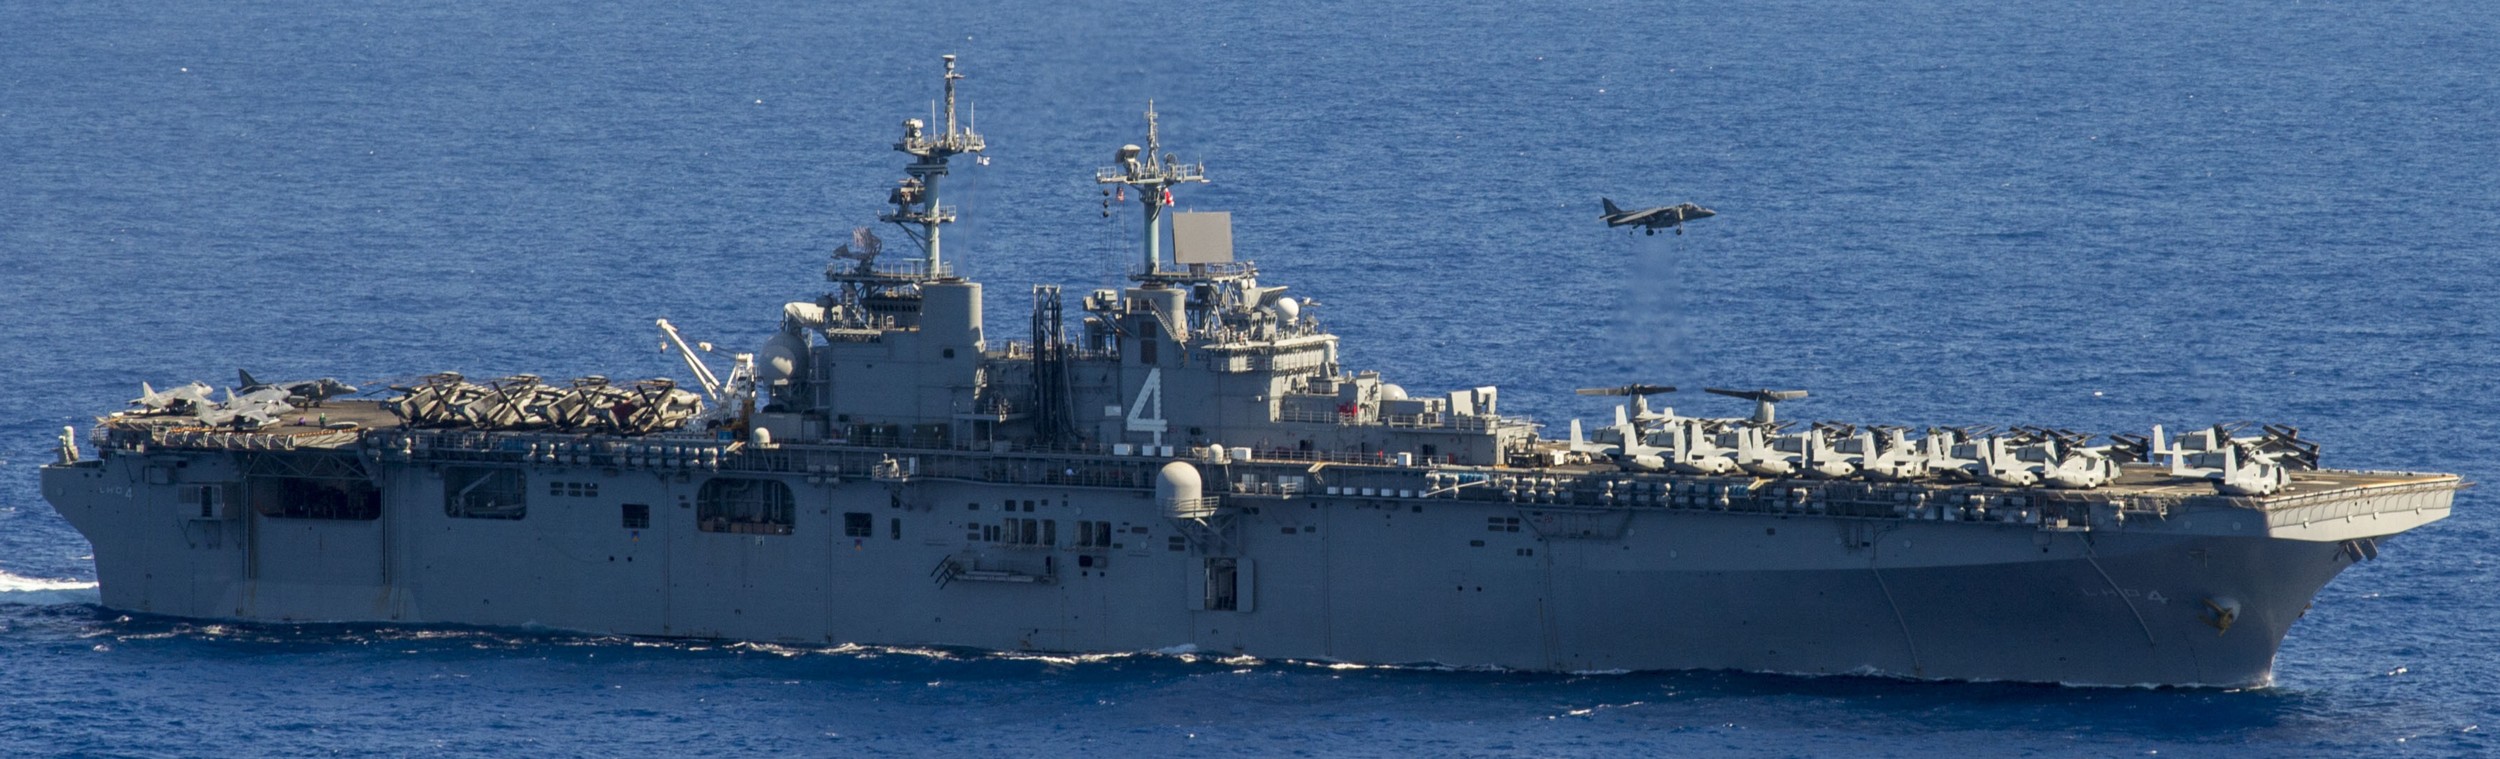 lhd-4 uss boxer wasp class amphibious assault ship dock landing us navy marines vmm-166 84